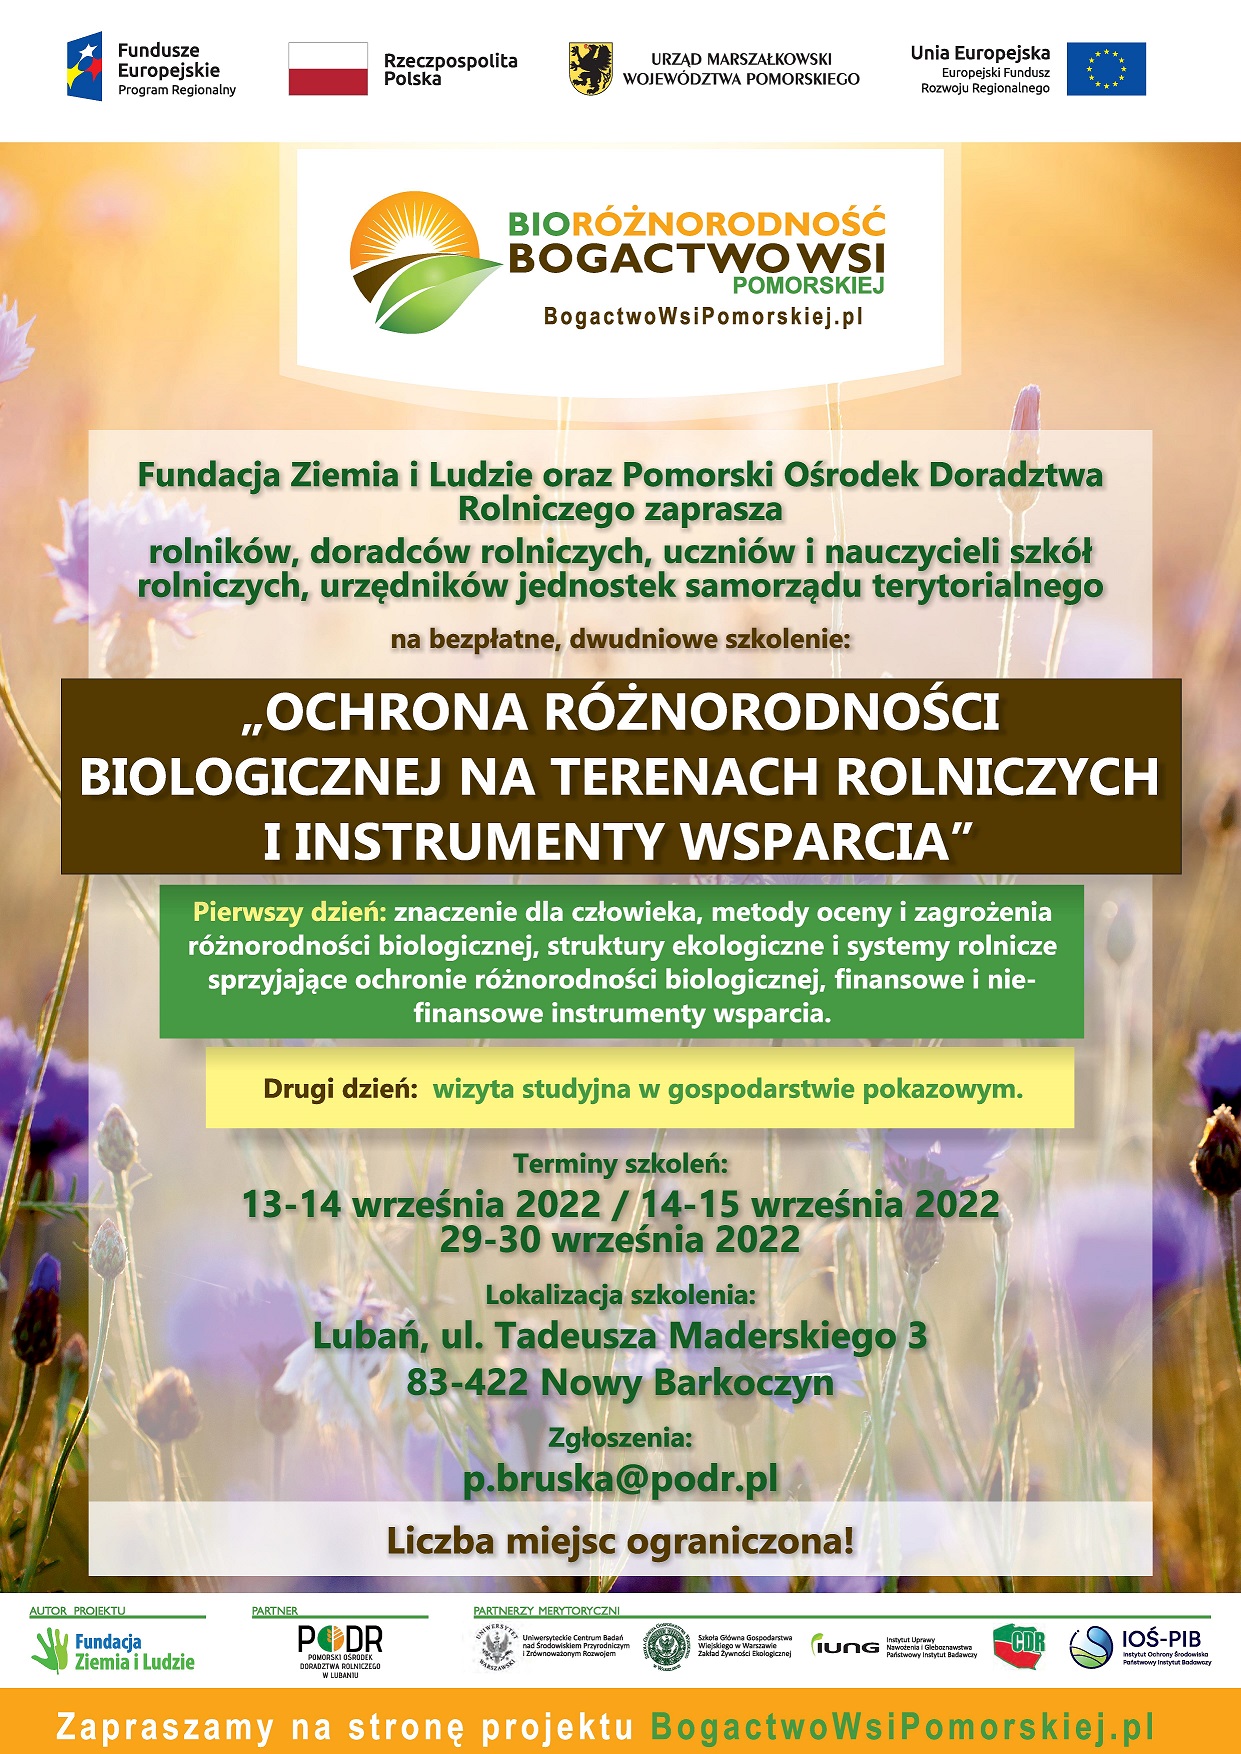 Ochrona różnorodności biologicznej na terenach rolniczych i instrumenty wsparcia - plakat